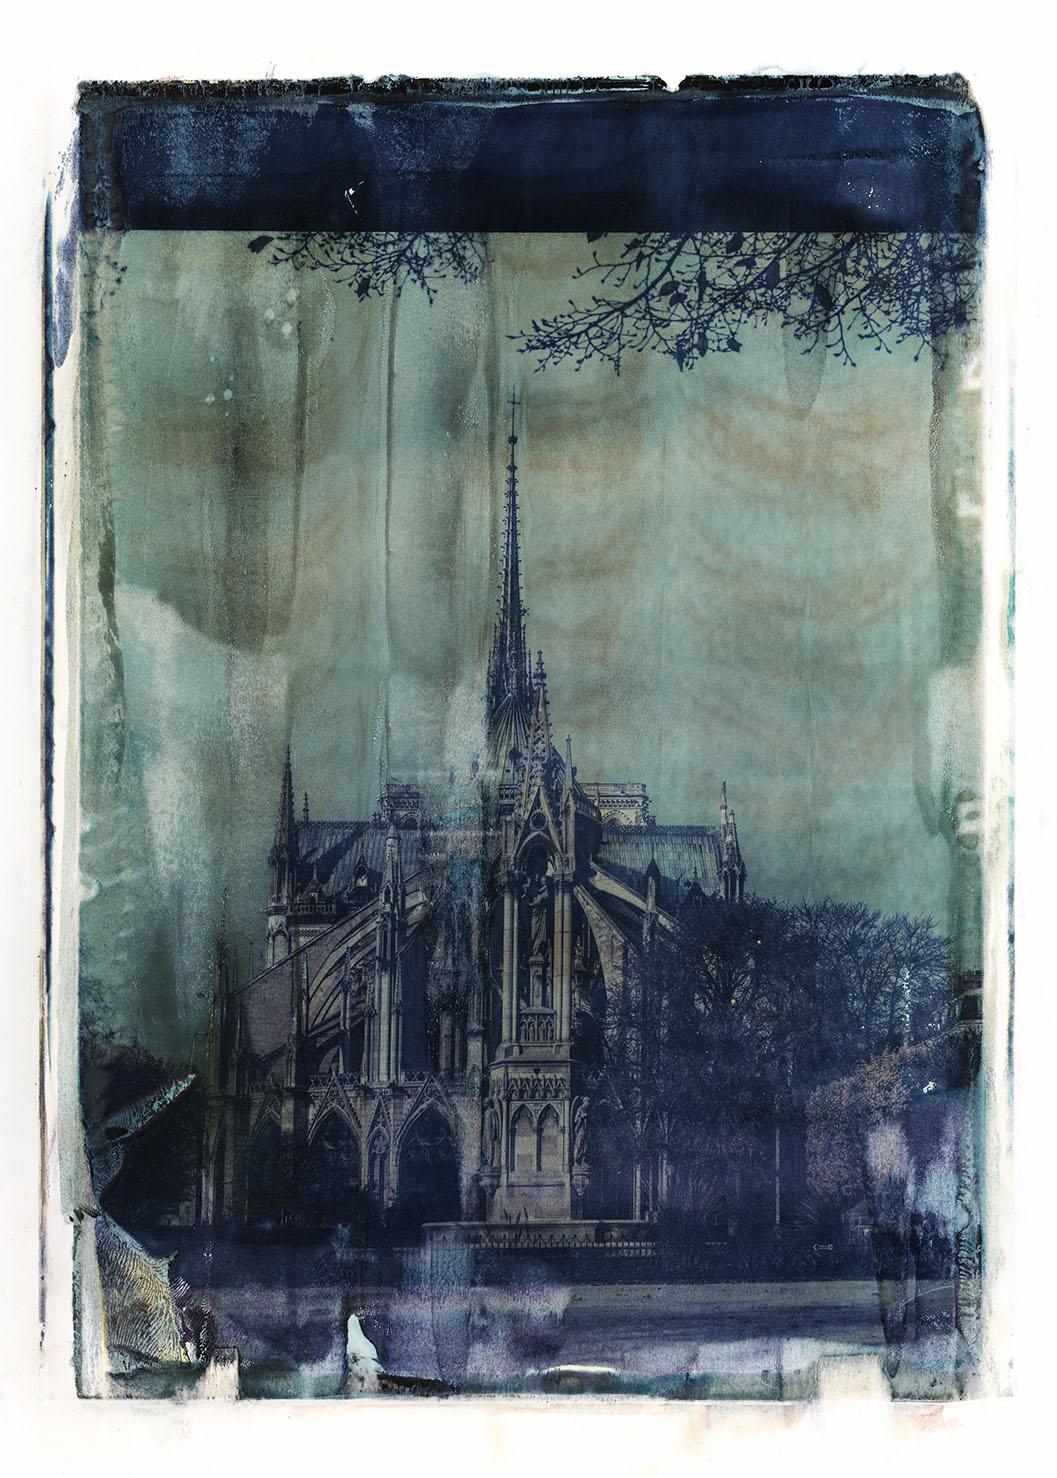 Notre Dame 9 - Contemporary, 21st Century, Large Format Polaroid, Paris, Icons